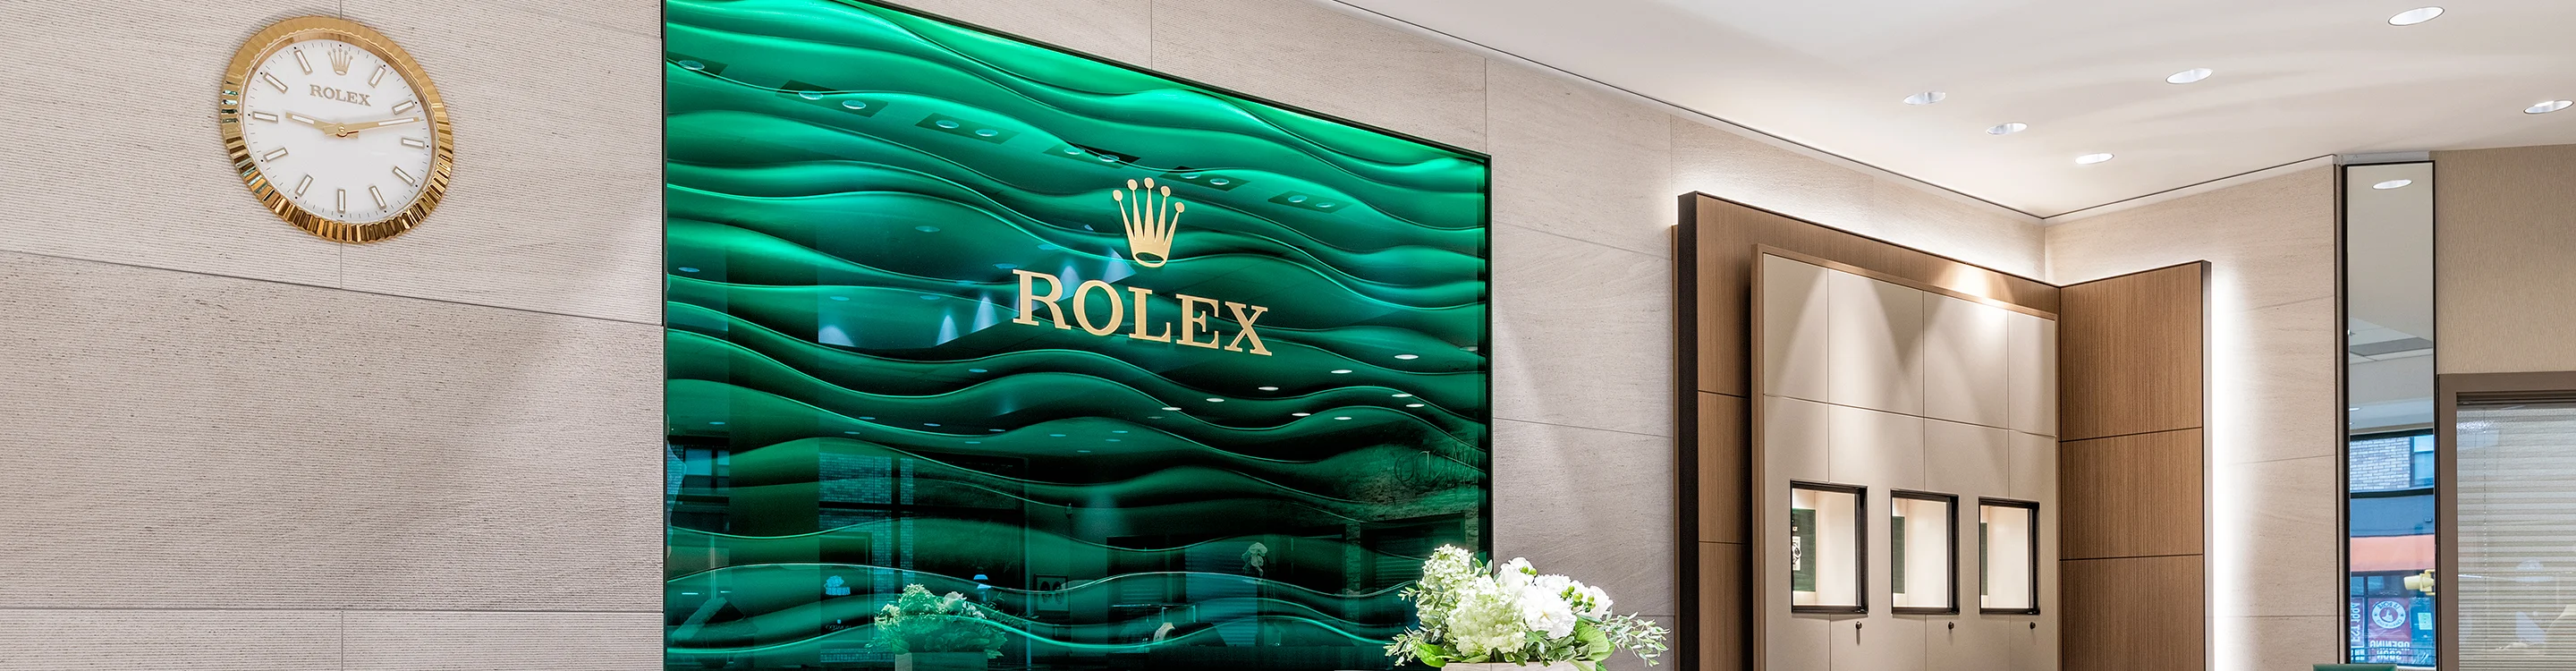 Rolex at Leonardo Jewelers